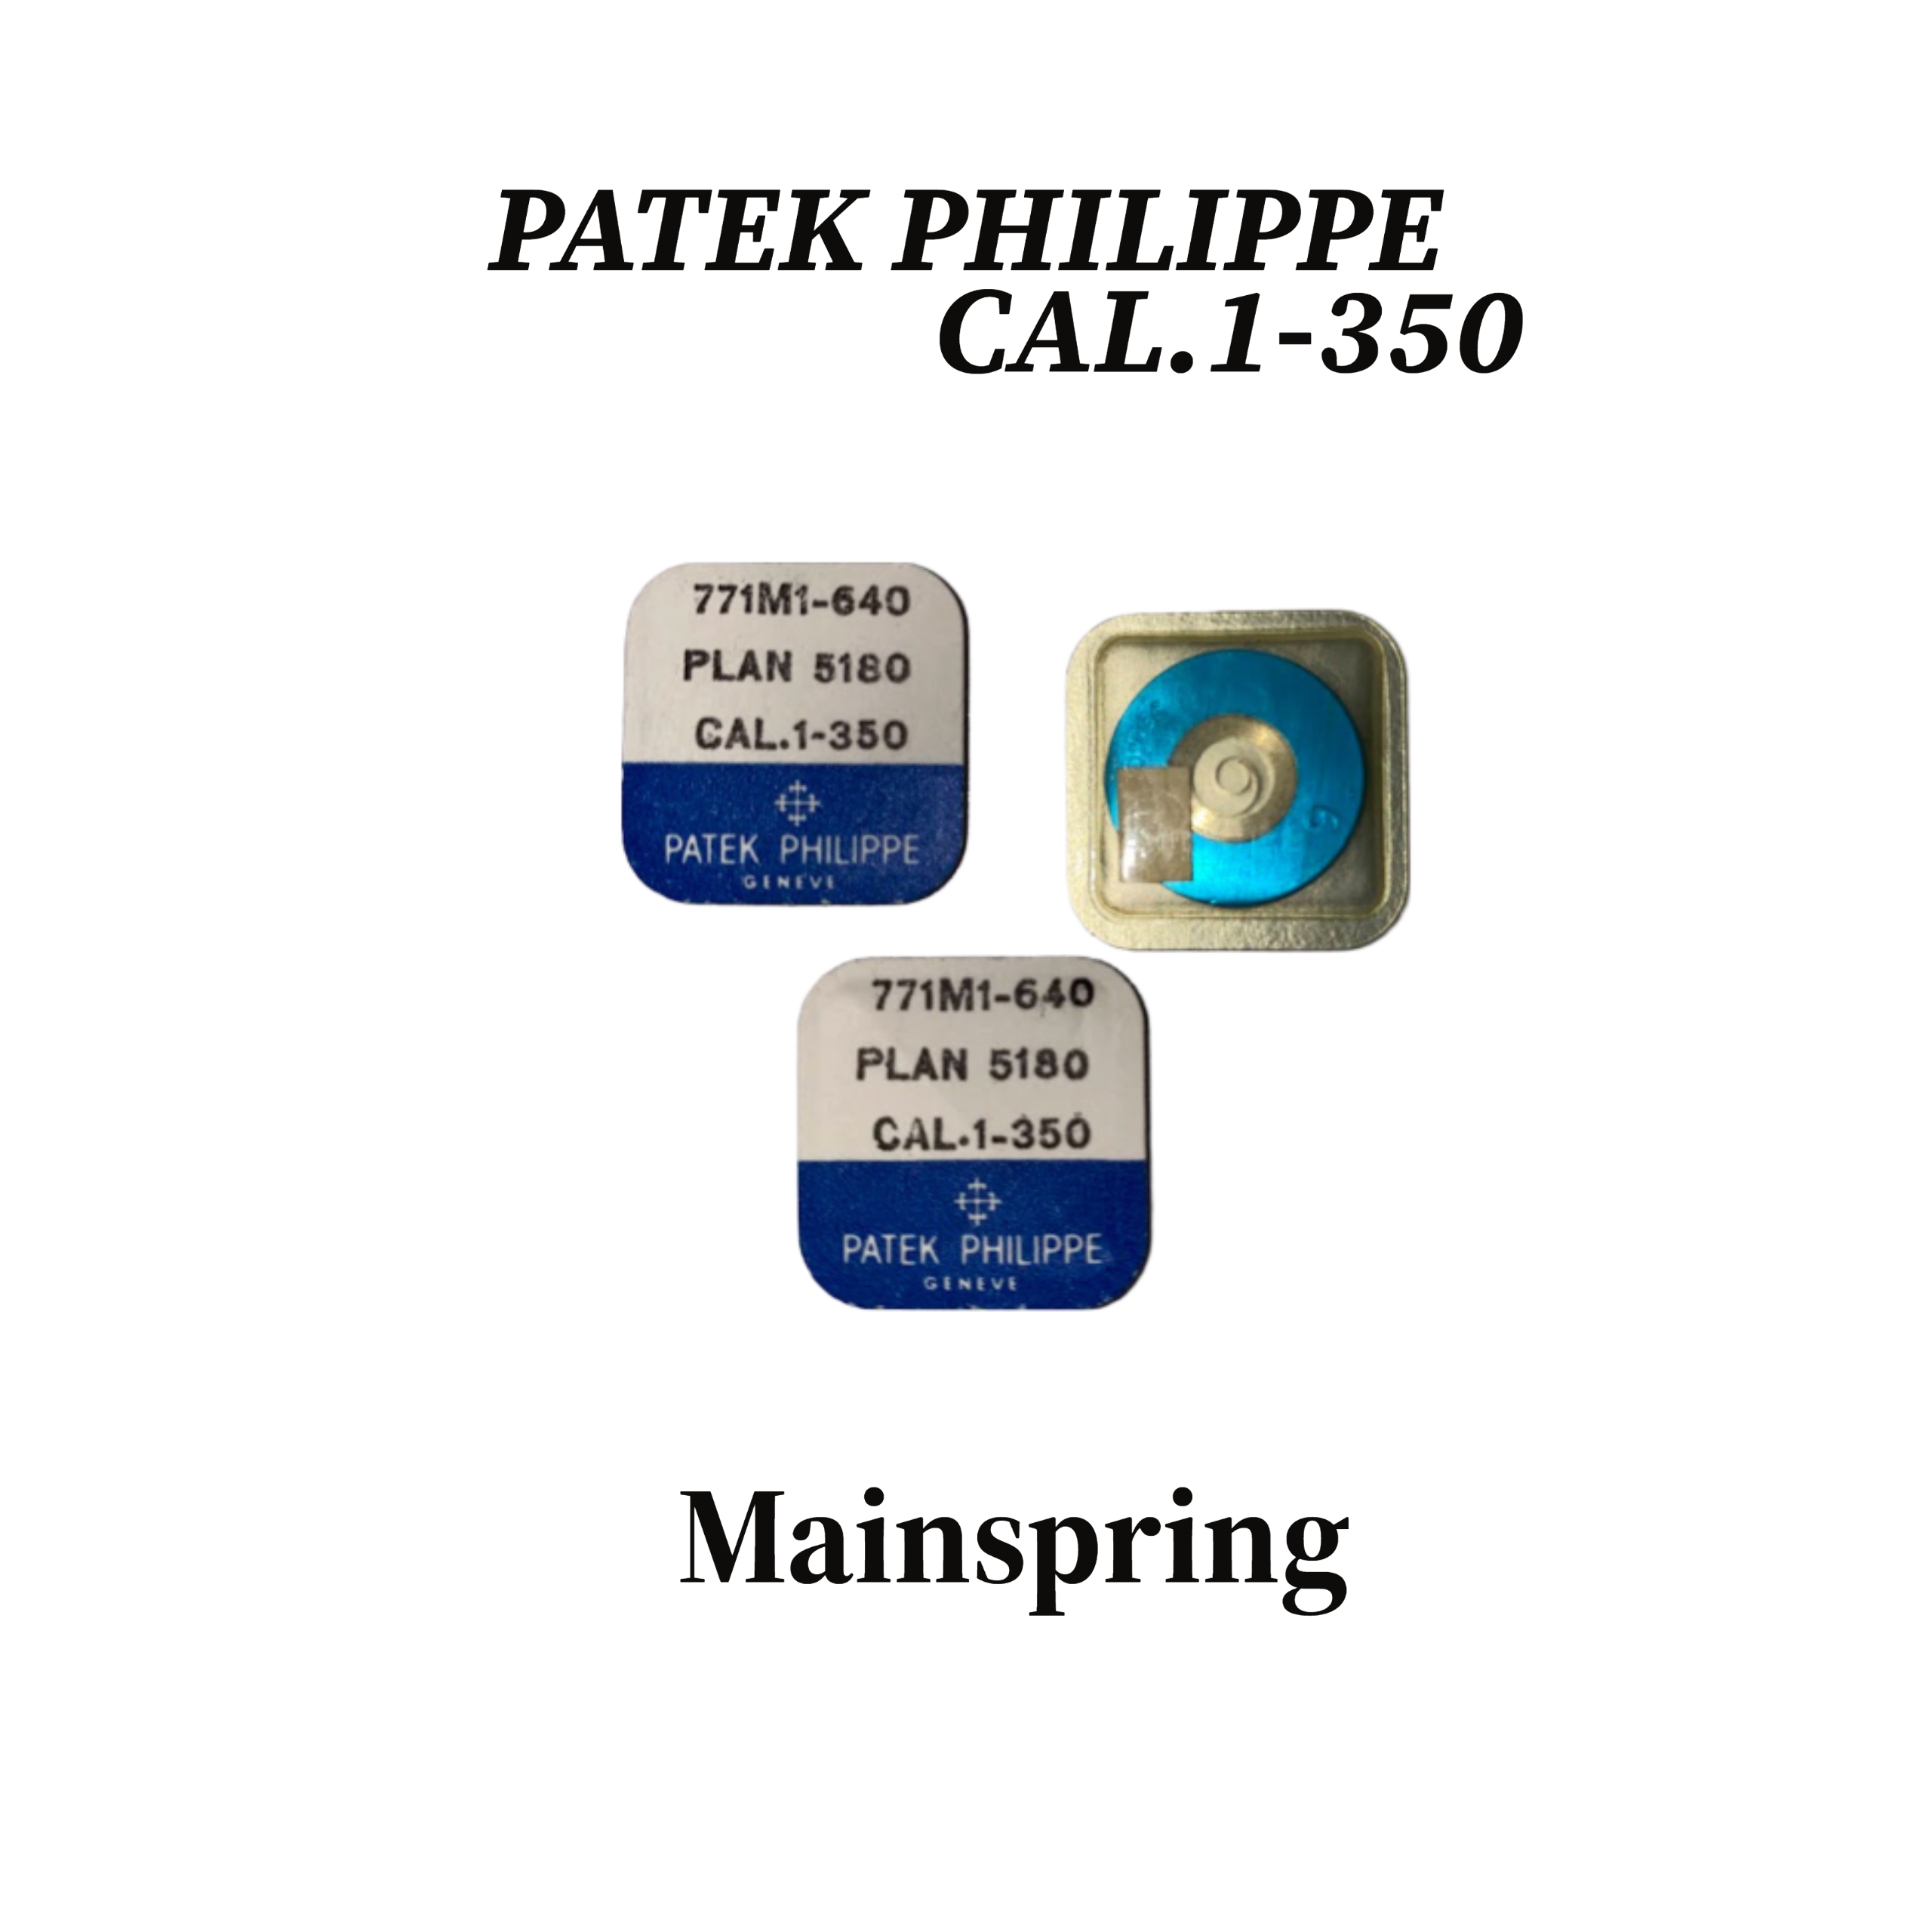 PATEK PHILIPPE CAL.1-350